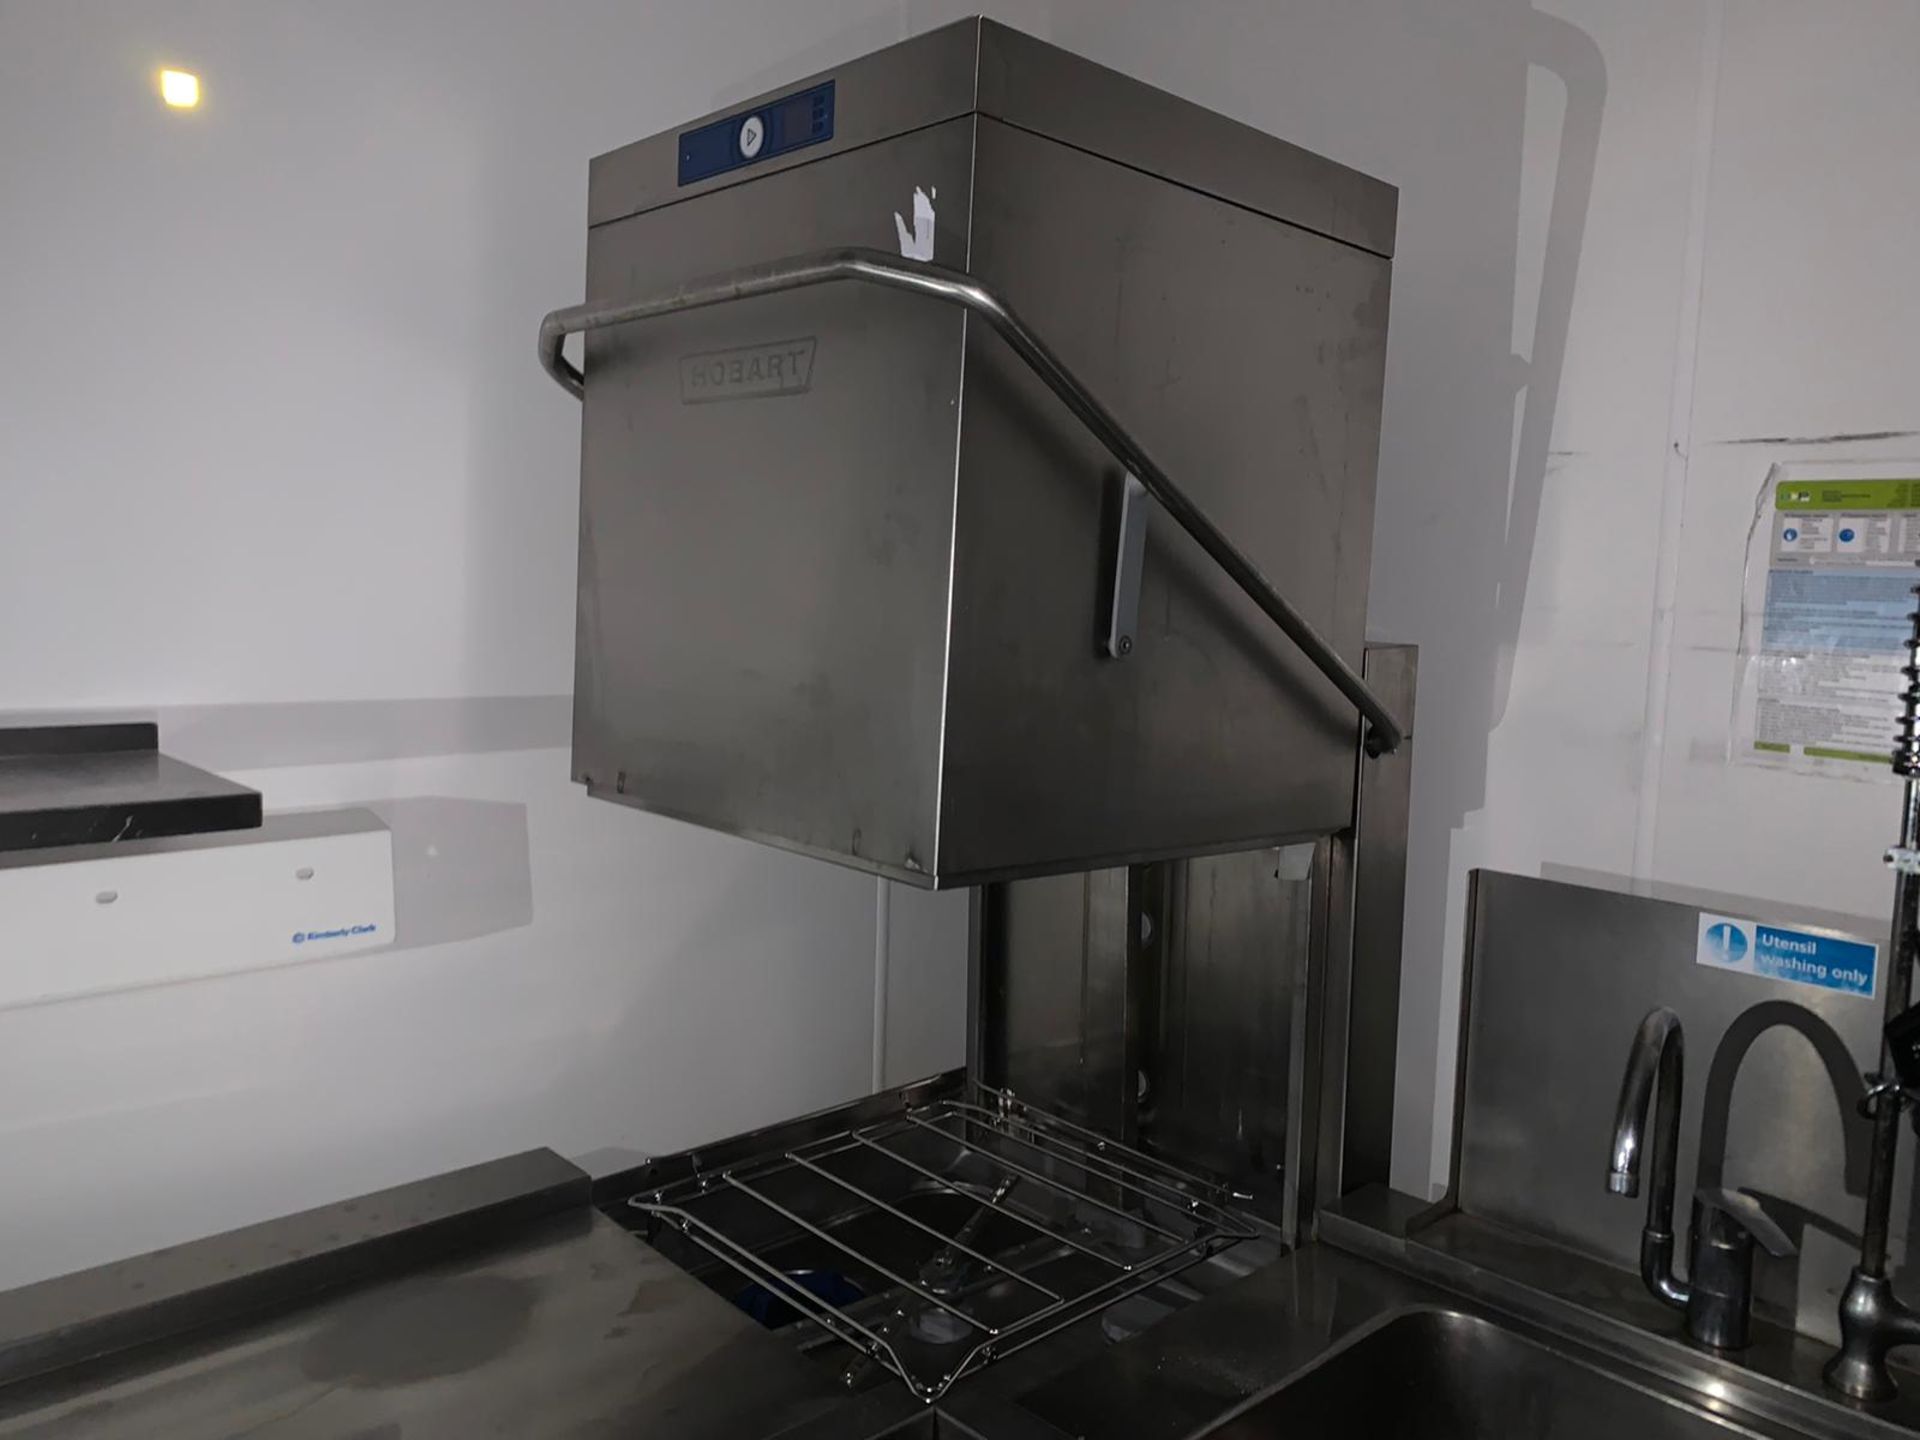 Hobart Commercial Grade Conveyor Dishwasher & Sink Unit - Image 5 of 9